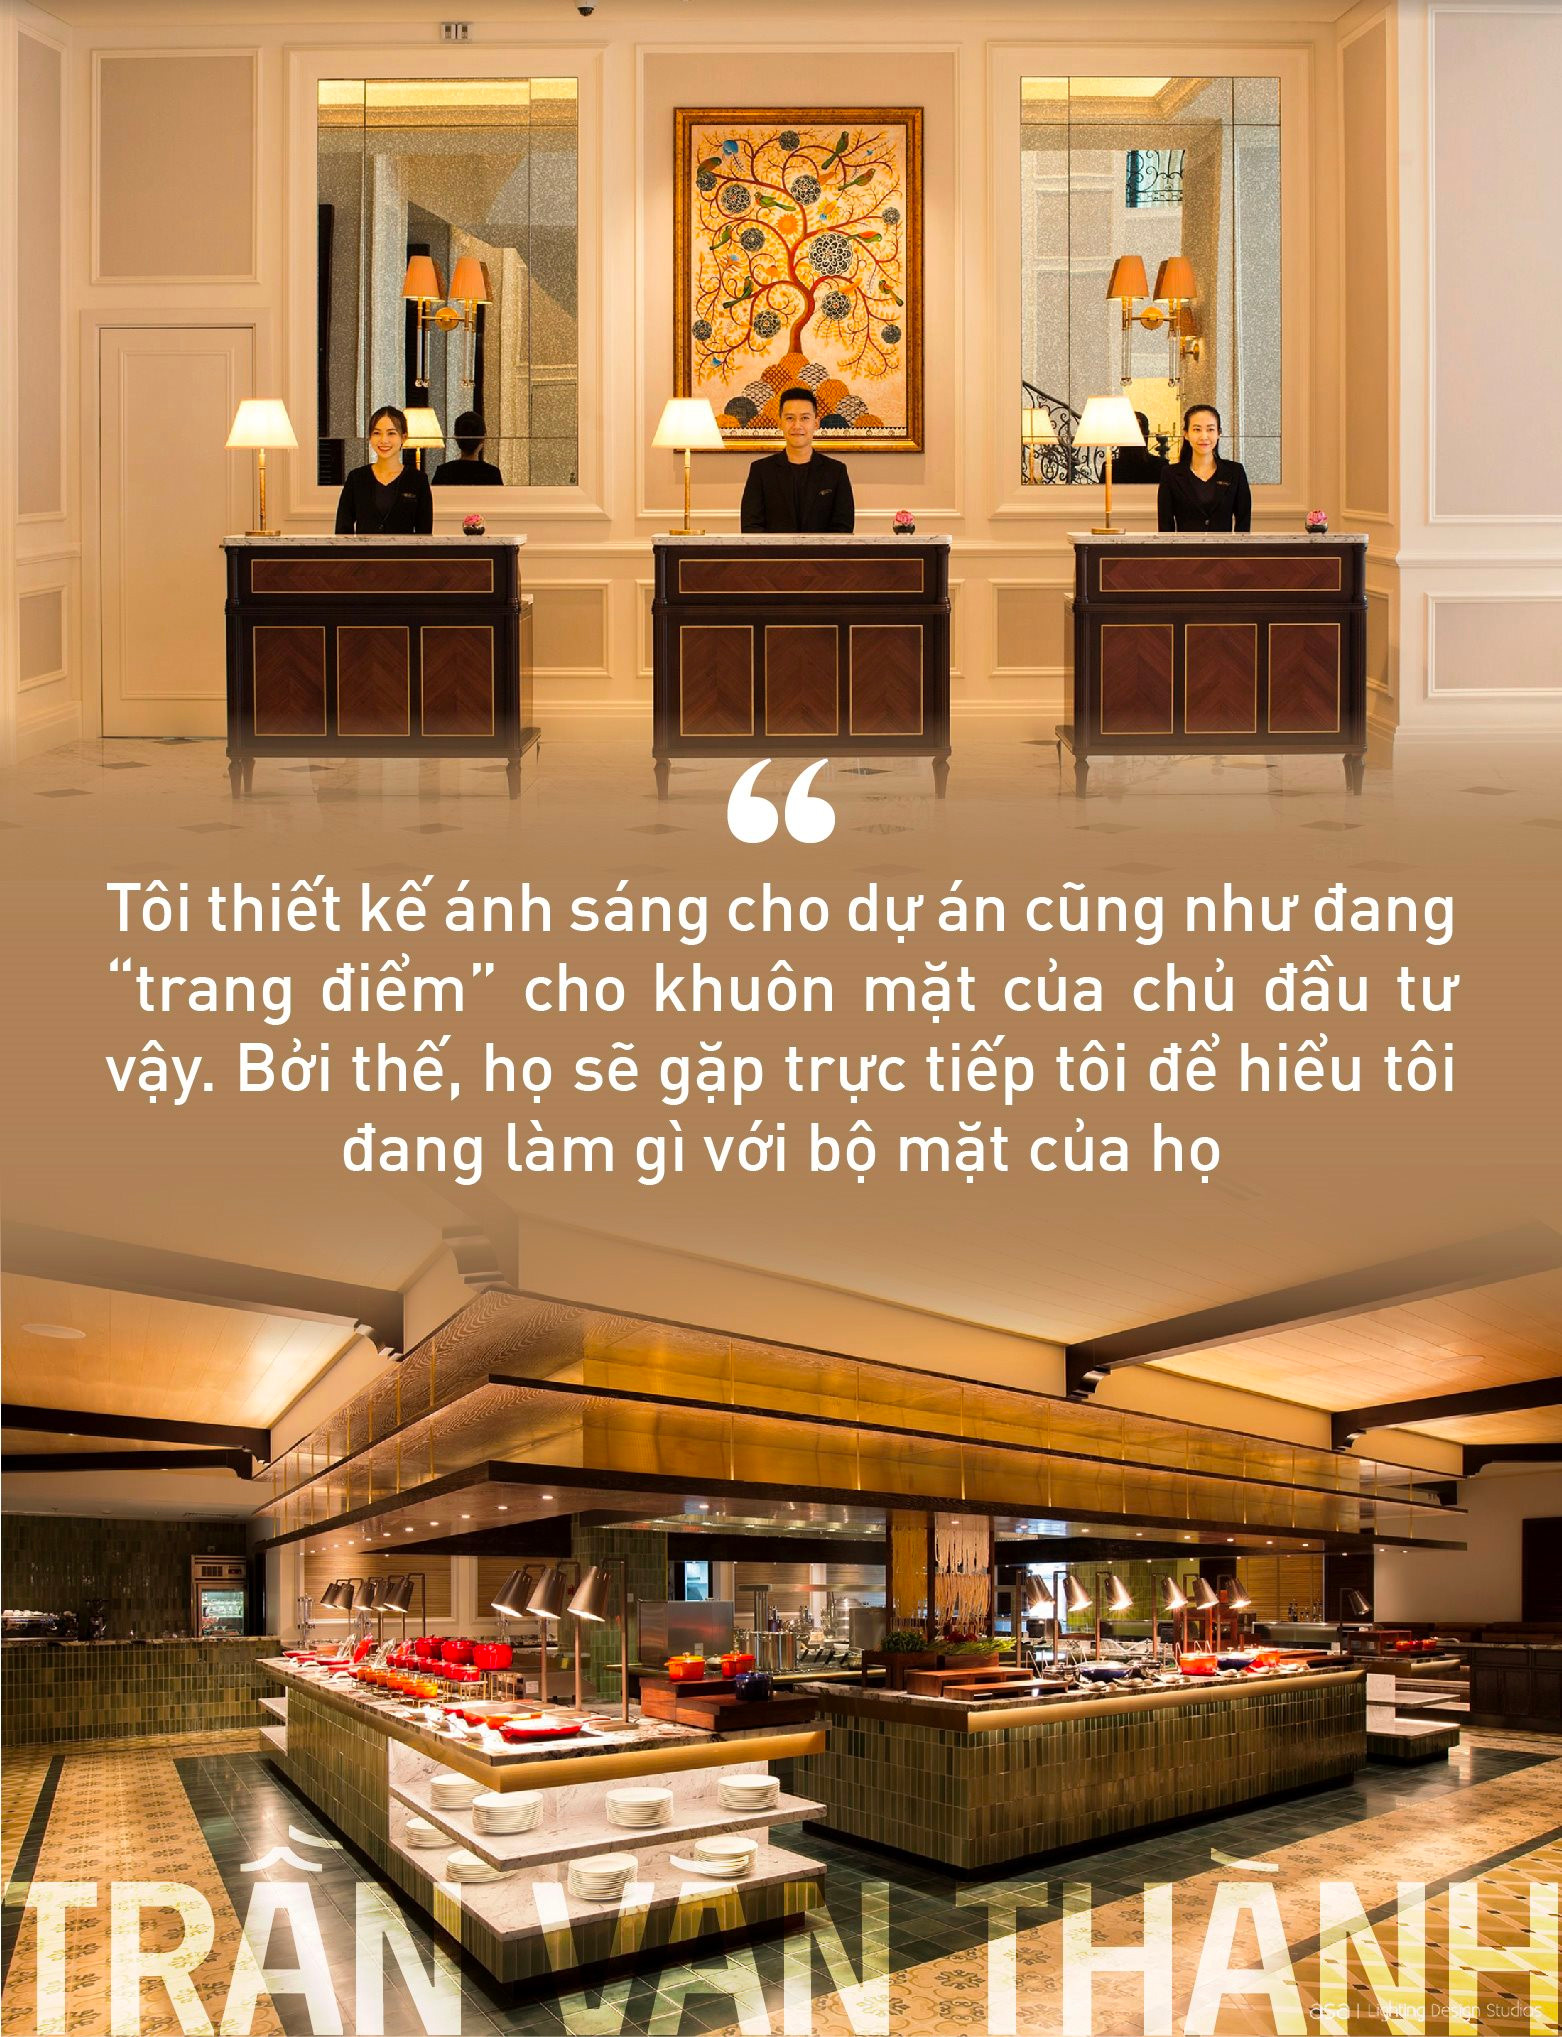 Cố vấn chiếu sáng cho các “ông lớn khách sạn” Trần Văn Thành: Thiết kế ánh sáng là “trang điểm” công trình mà thù lao được trả bằng một thứ không phải tiền bạc - Ảnh 3.